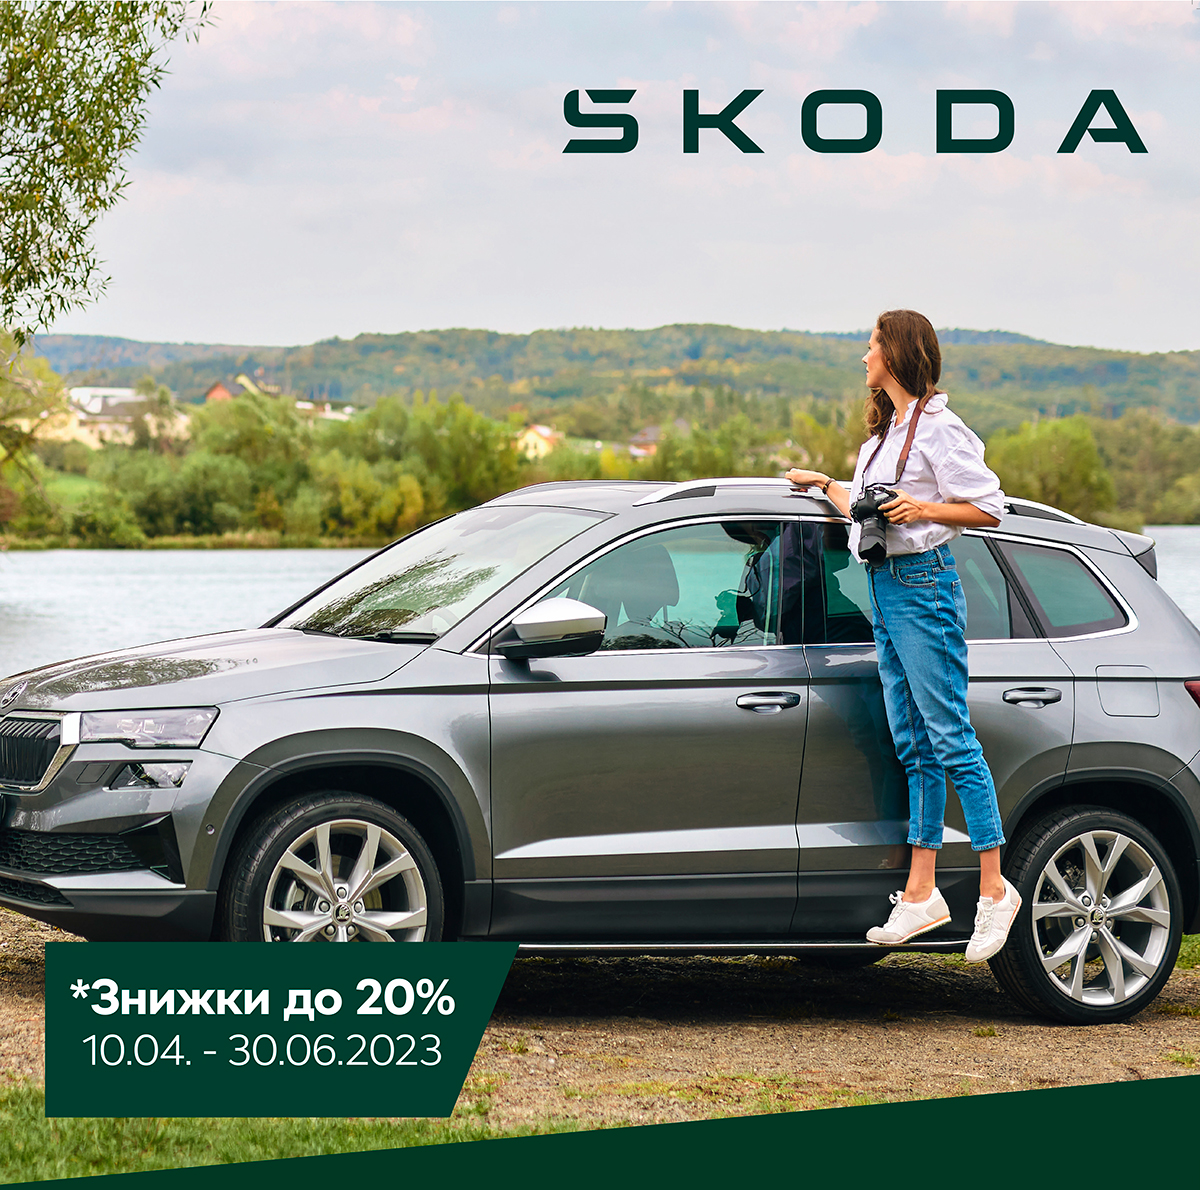 Акція на оригінальні запасні частини Škoda «Завжди на ходу»